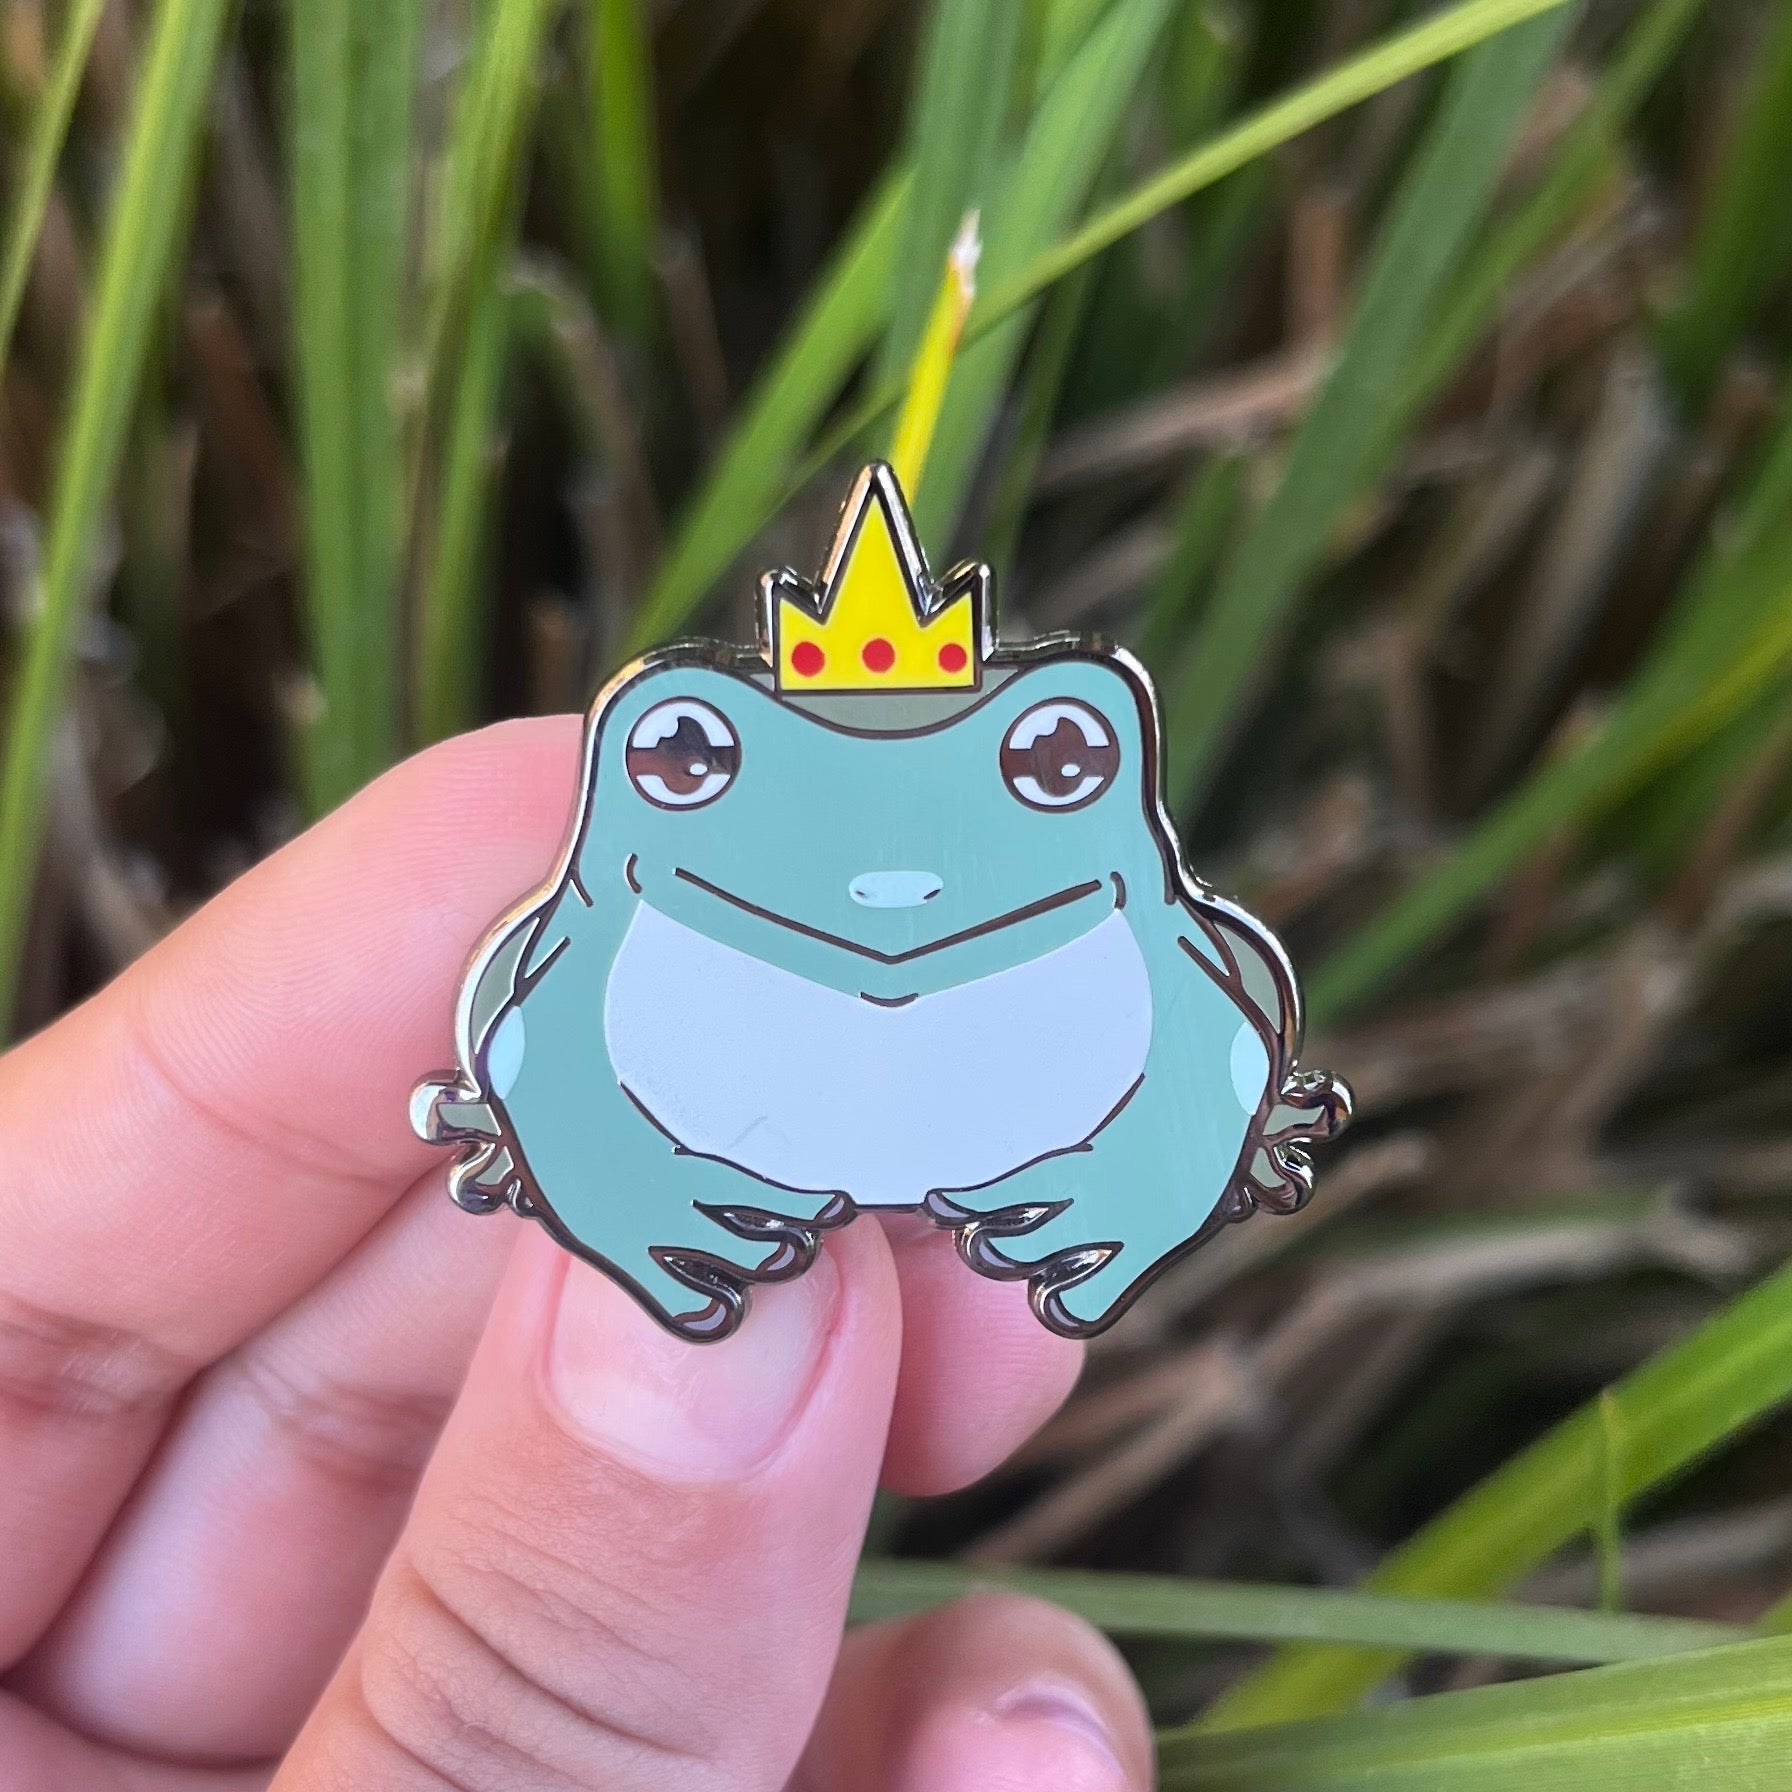 King Frog enamel pin